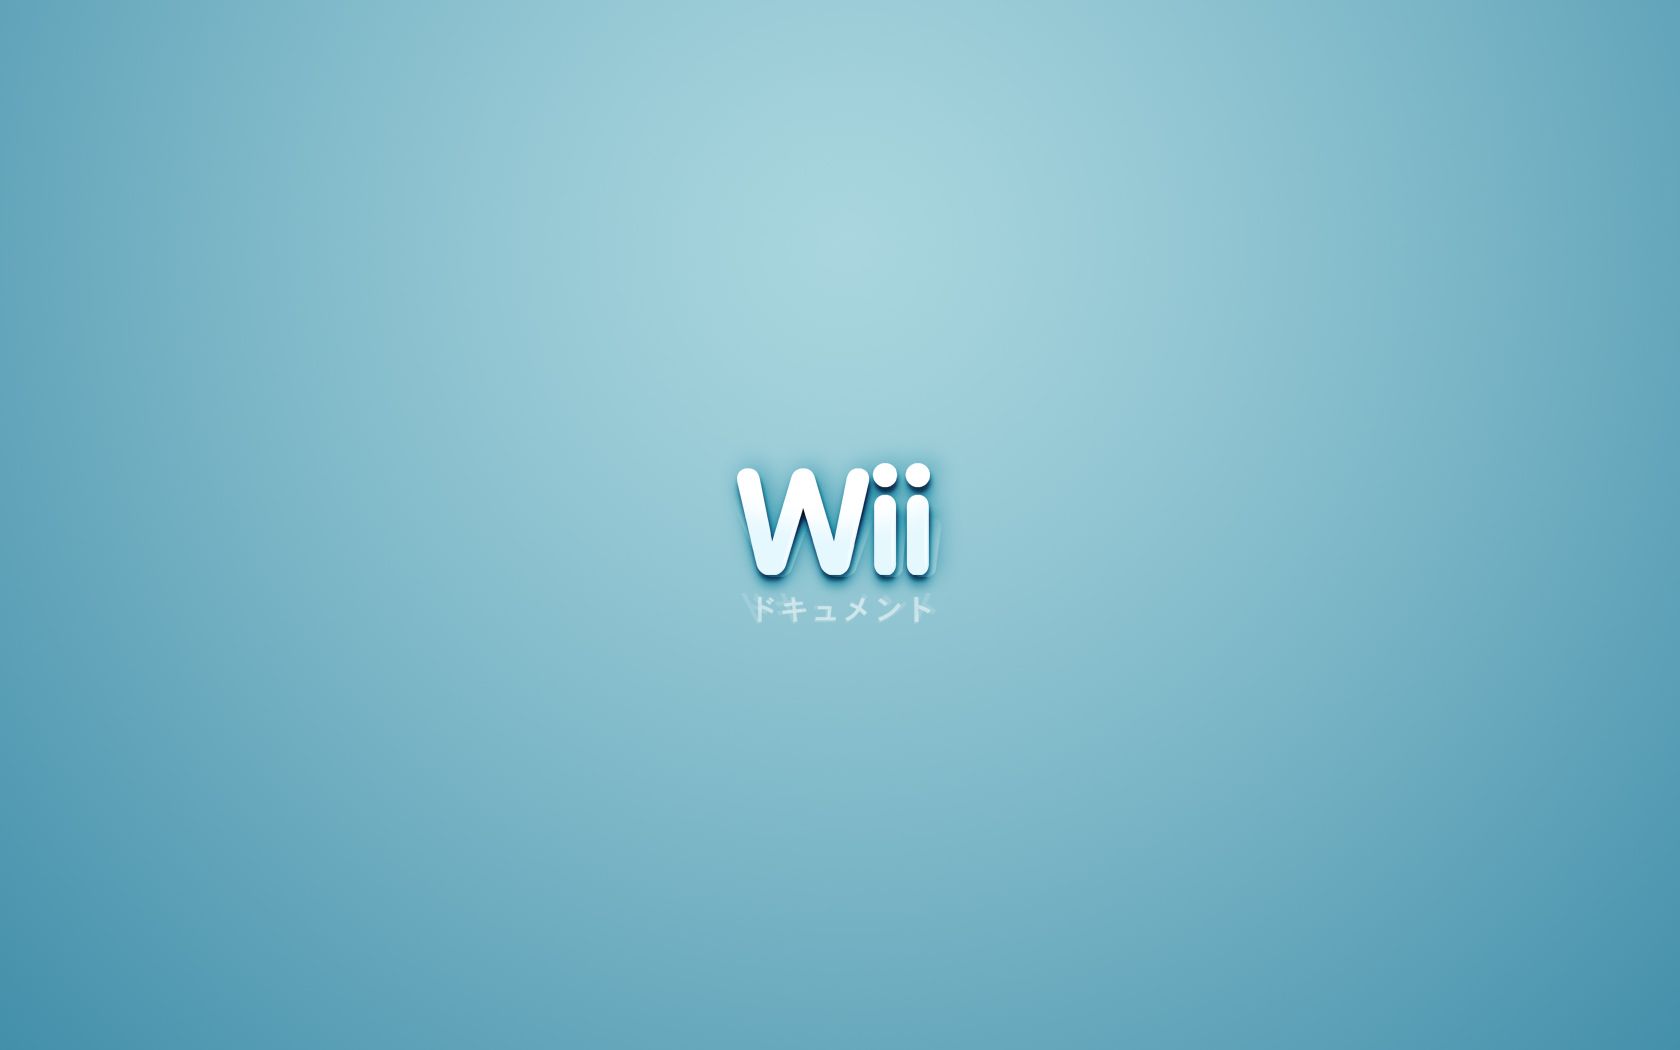 Los mejores fondos de pantalla de Nintendo Wii para la pantalla del teléfono